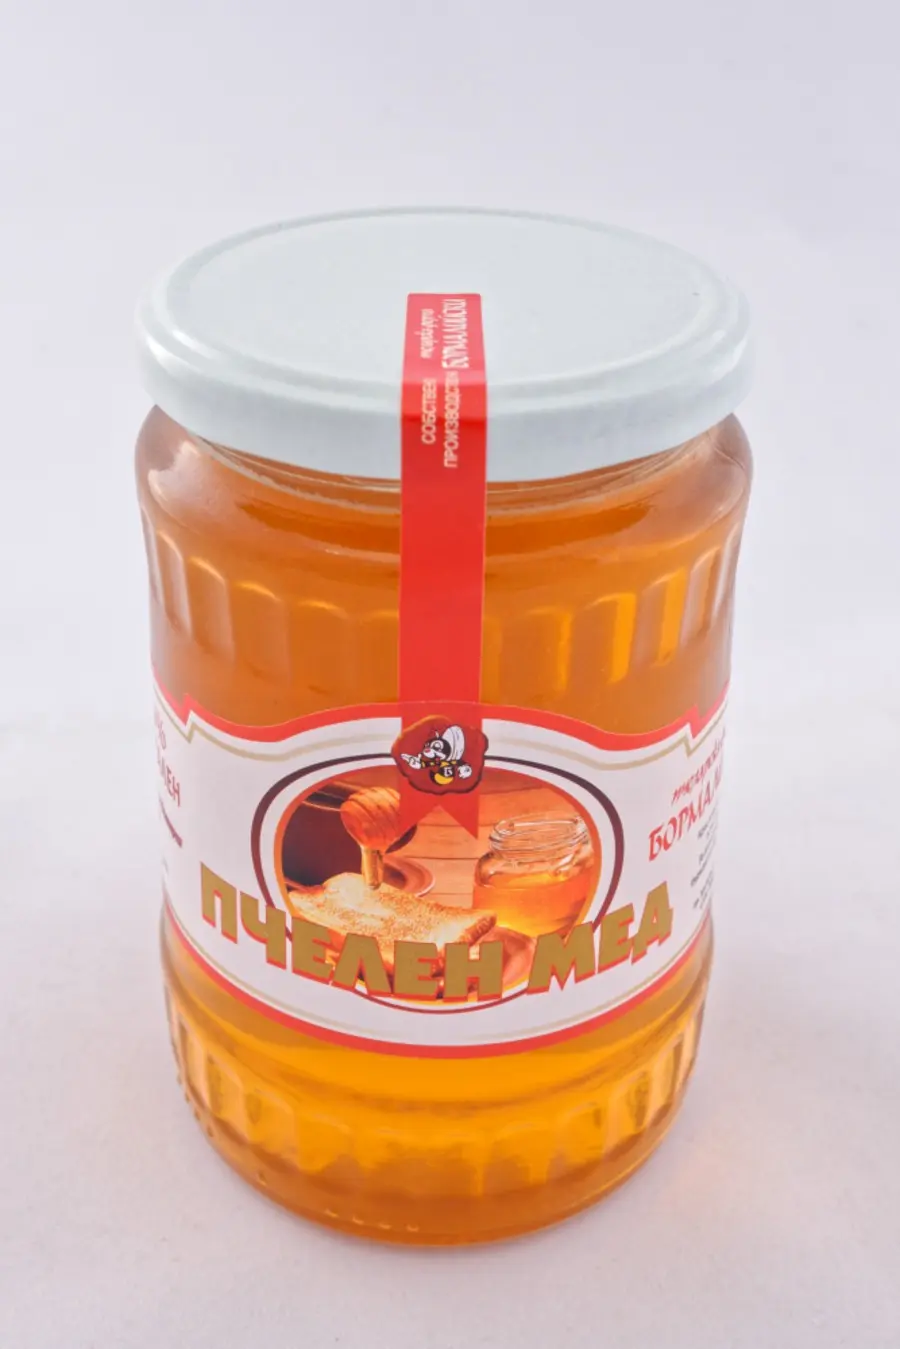 Пчелен мед БУКЕТ - 700 гр.